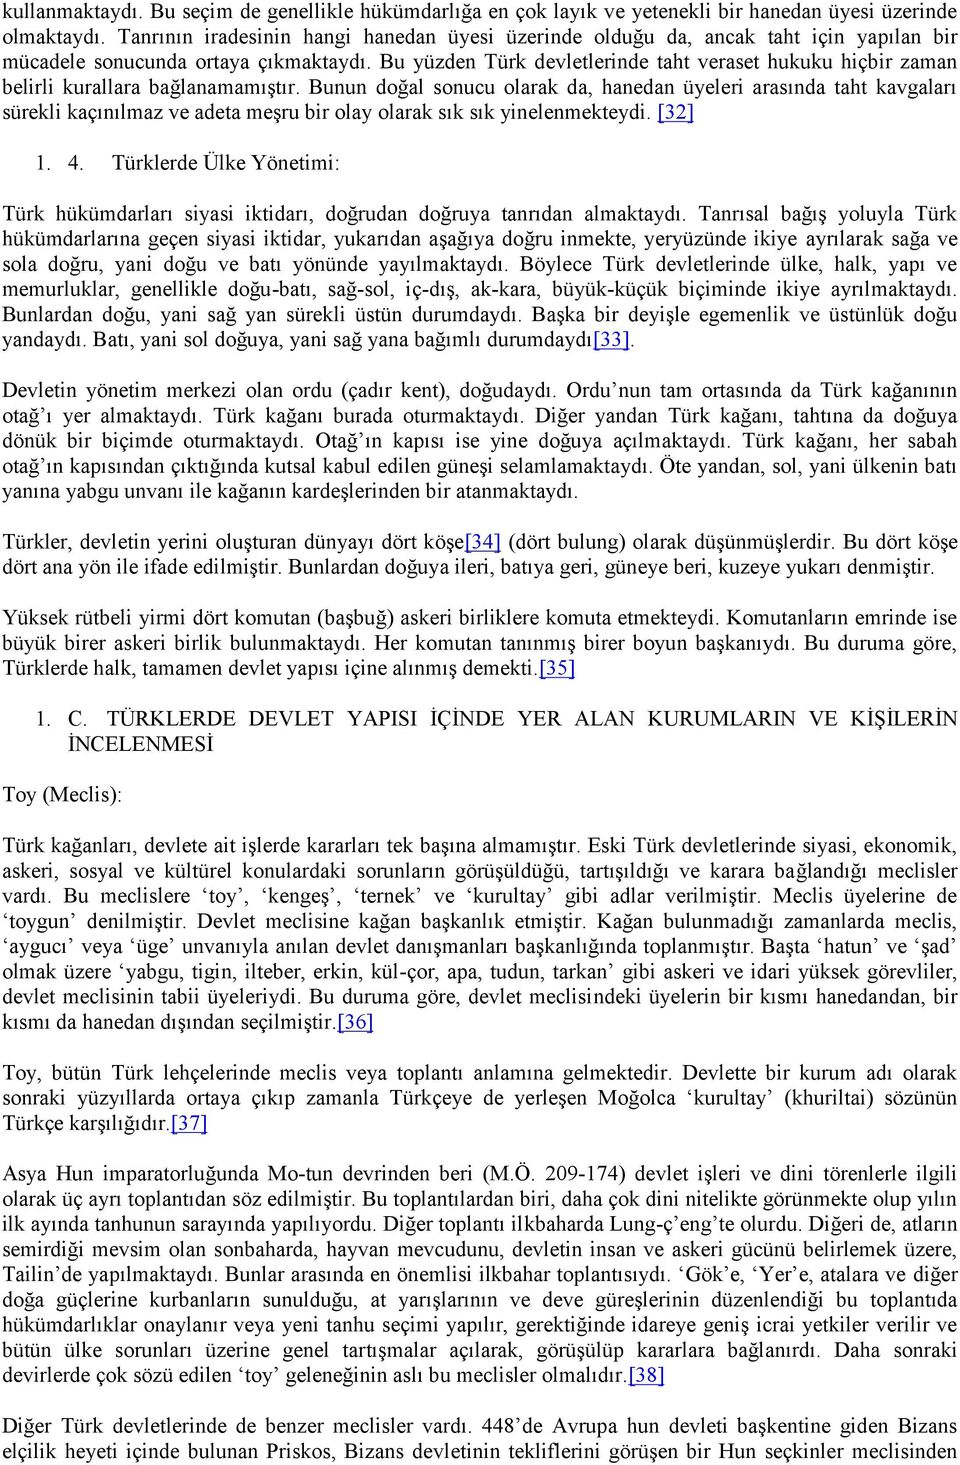 Bu yüzden Türk devletlerinde taht veraset hukuku hiçbir zaman belirli kurallara bağlanamamıştır.